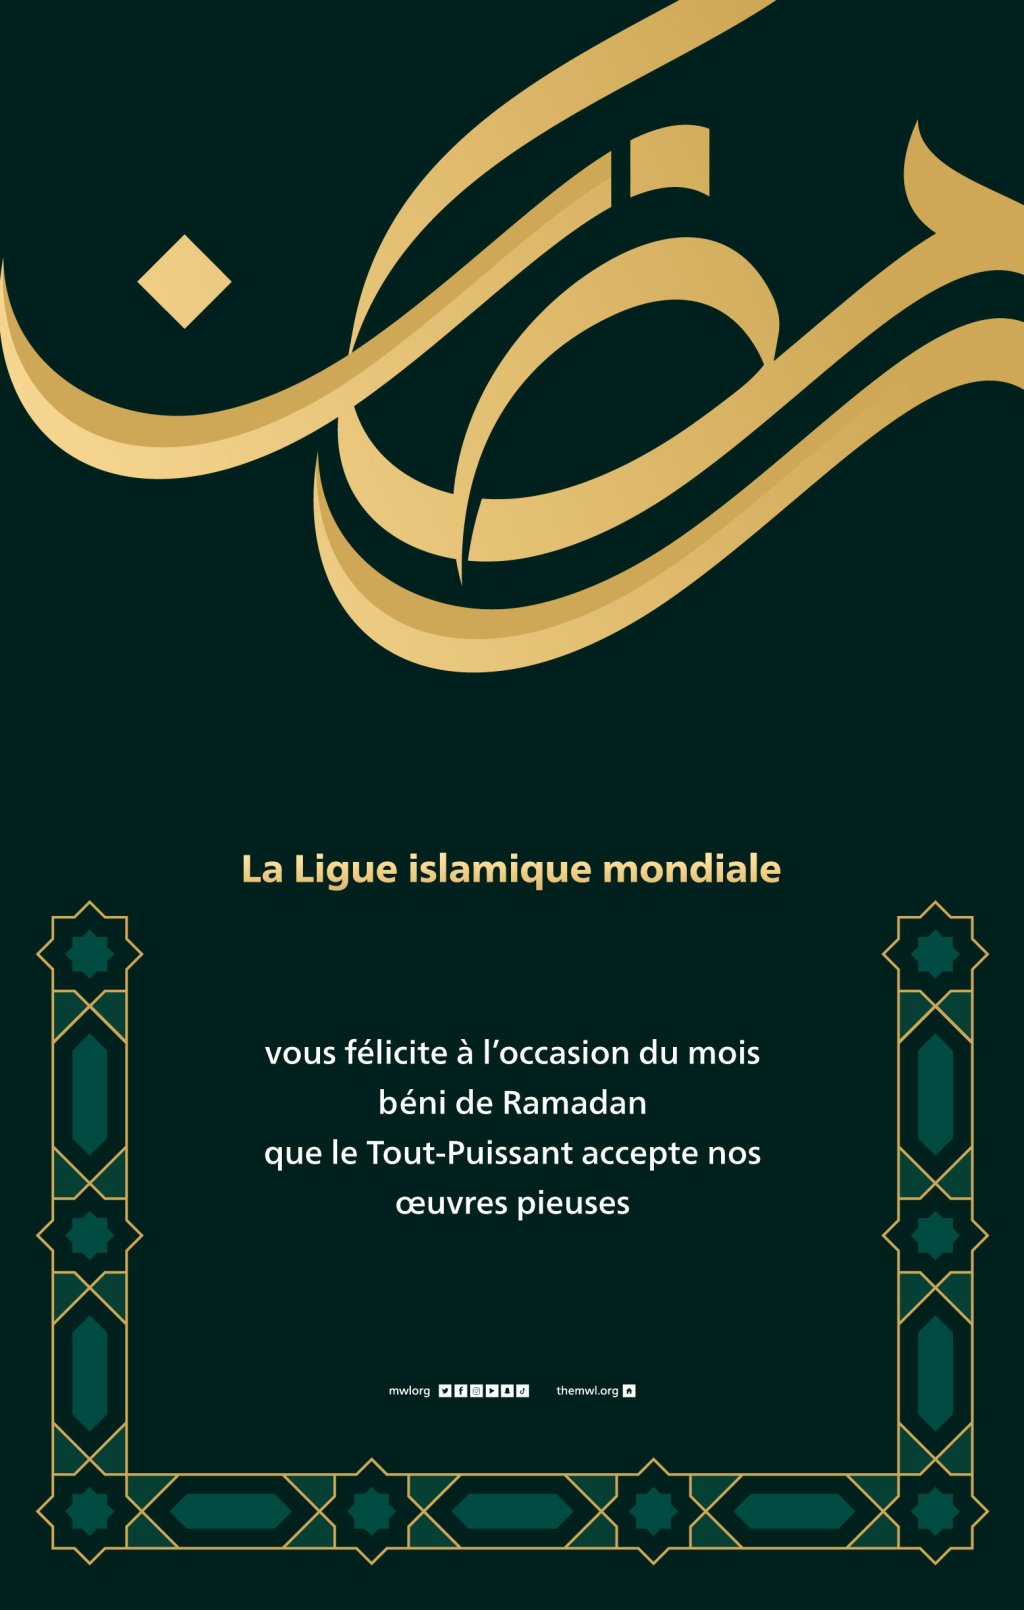 La Ligue islamique mondiale vous félicite à l’occasion de la venue du mois béni de Ramadan, que le Tout-Puissant accepte nos œuvres prises.